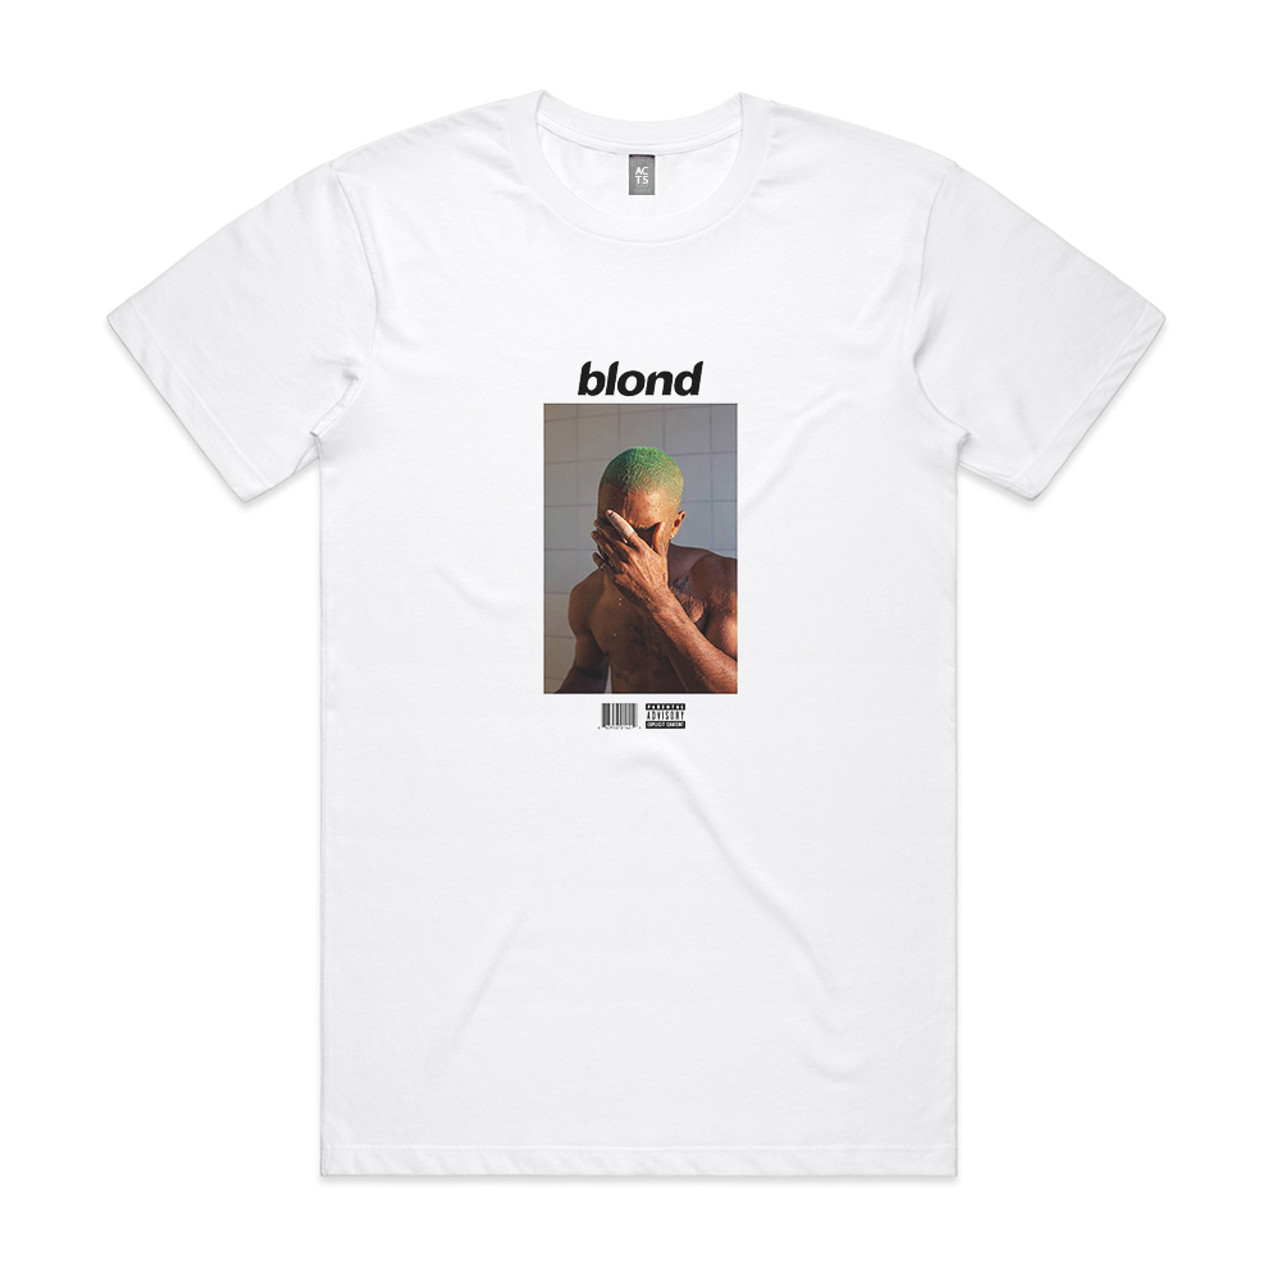 Frank Ocean Blond Album Cover T-Shirt White